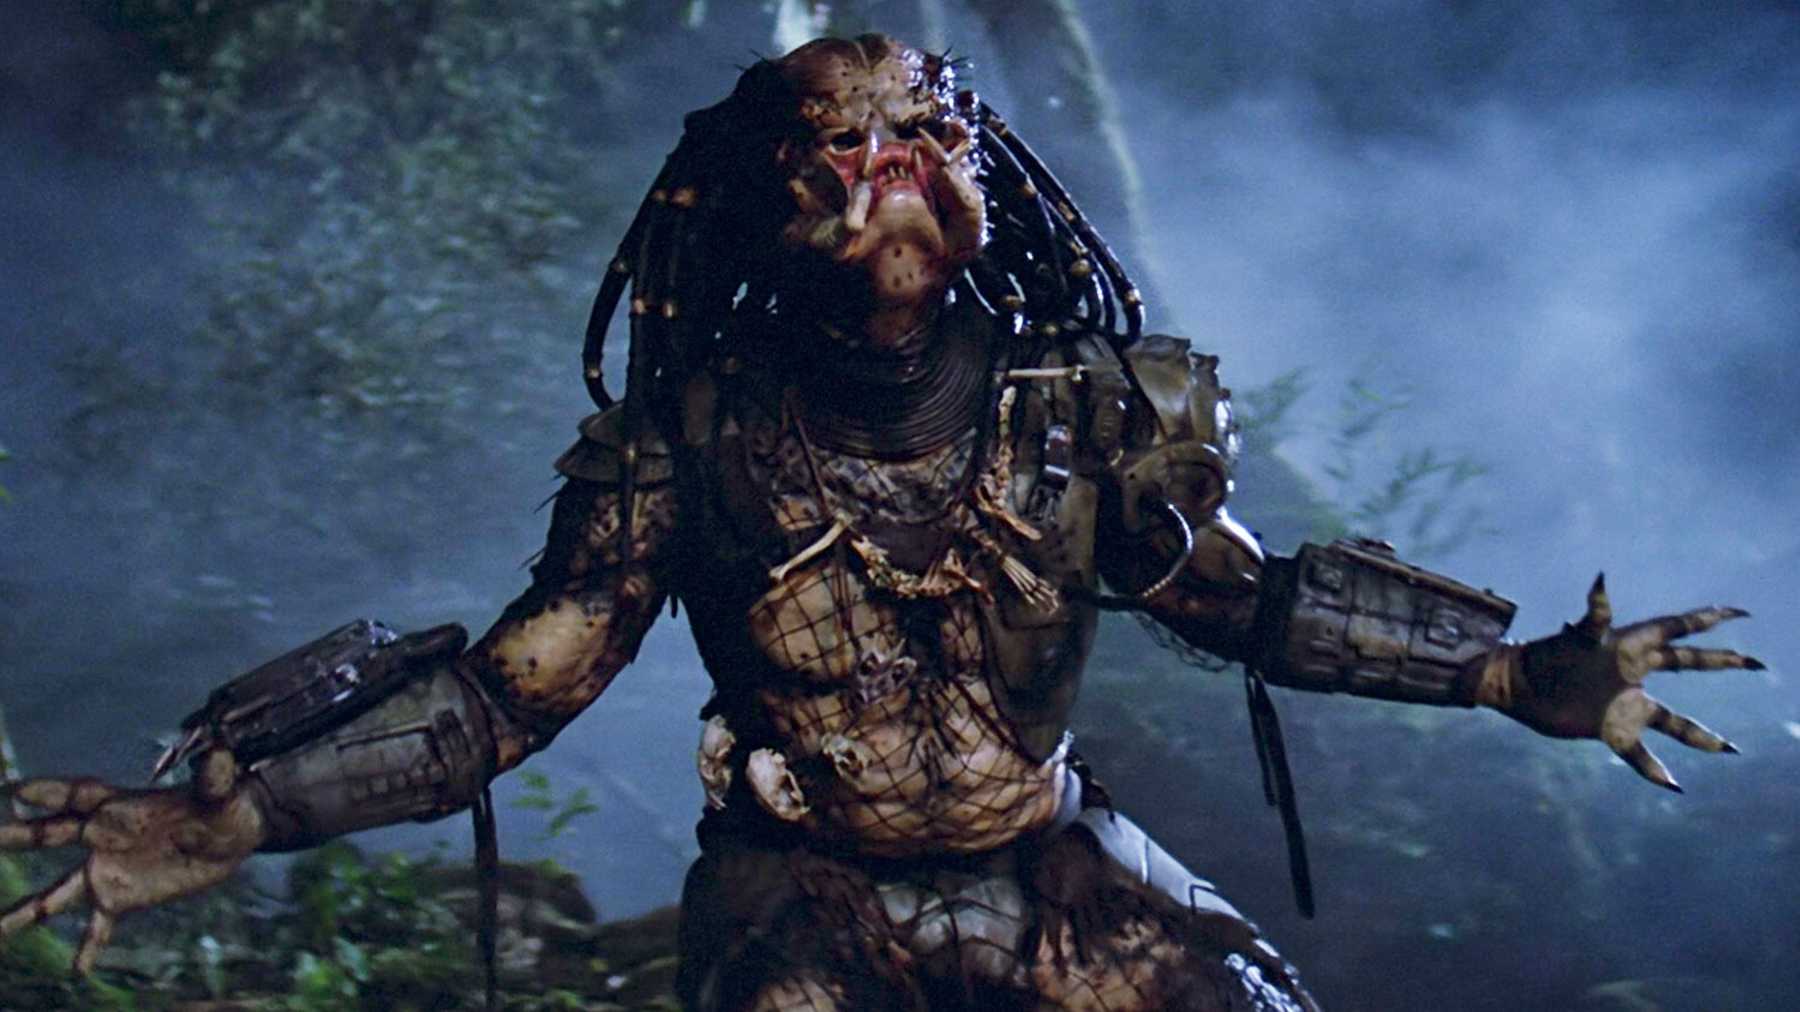 Hulu's Prey as a Title of Predator Prequel